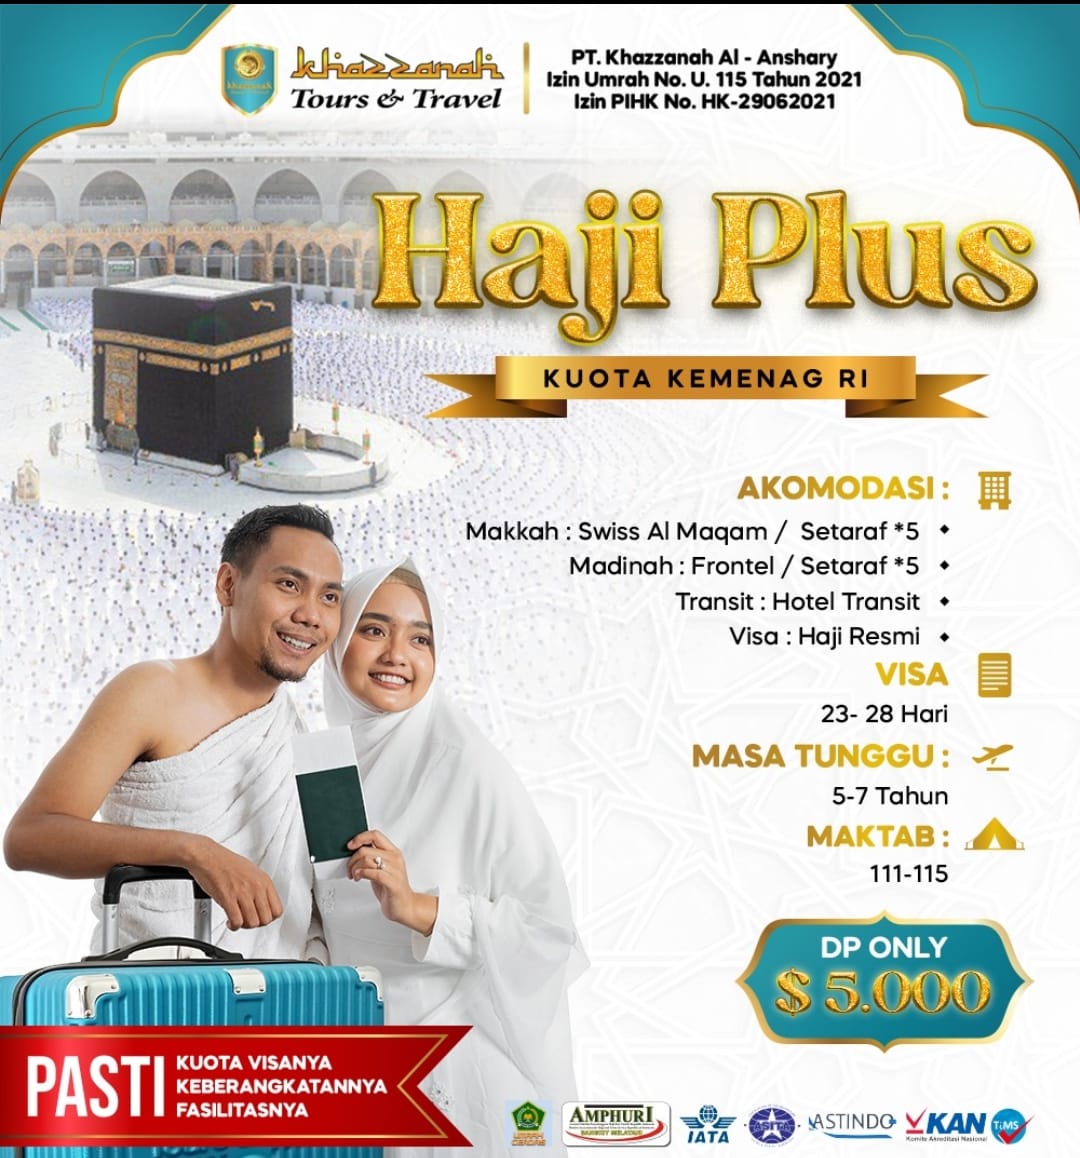 Paket Haji Khusus Kuota Kemenag RI Termurah